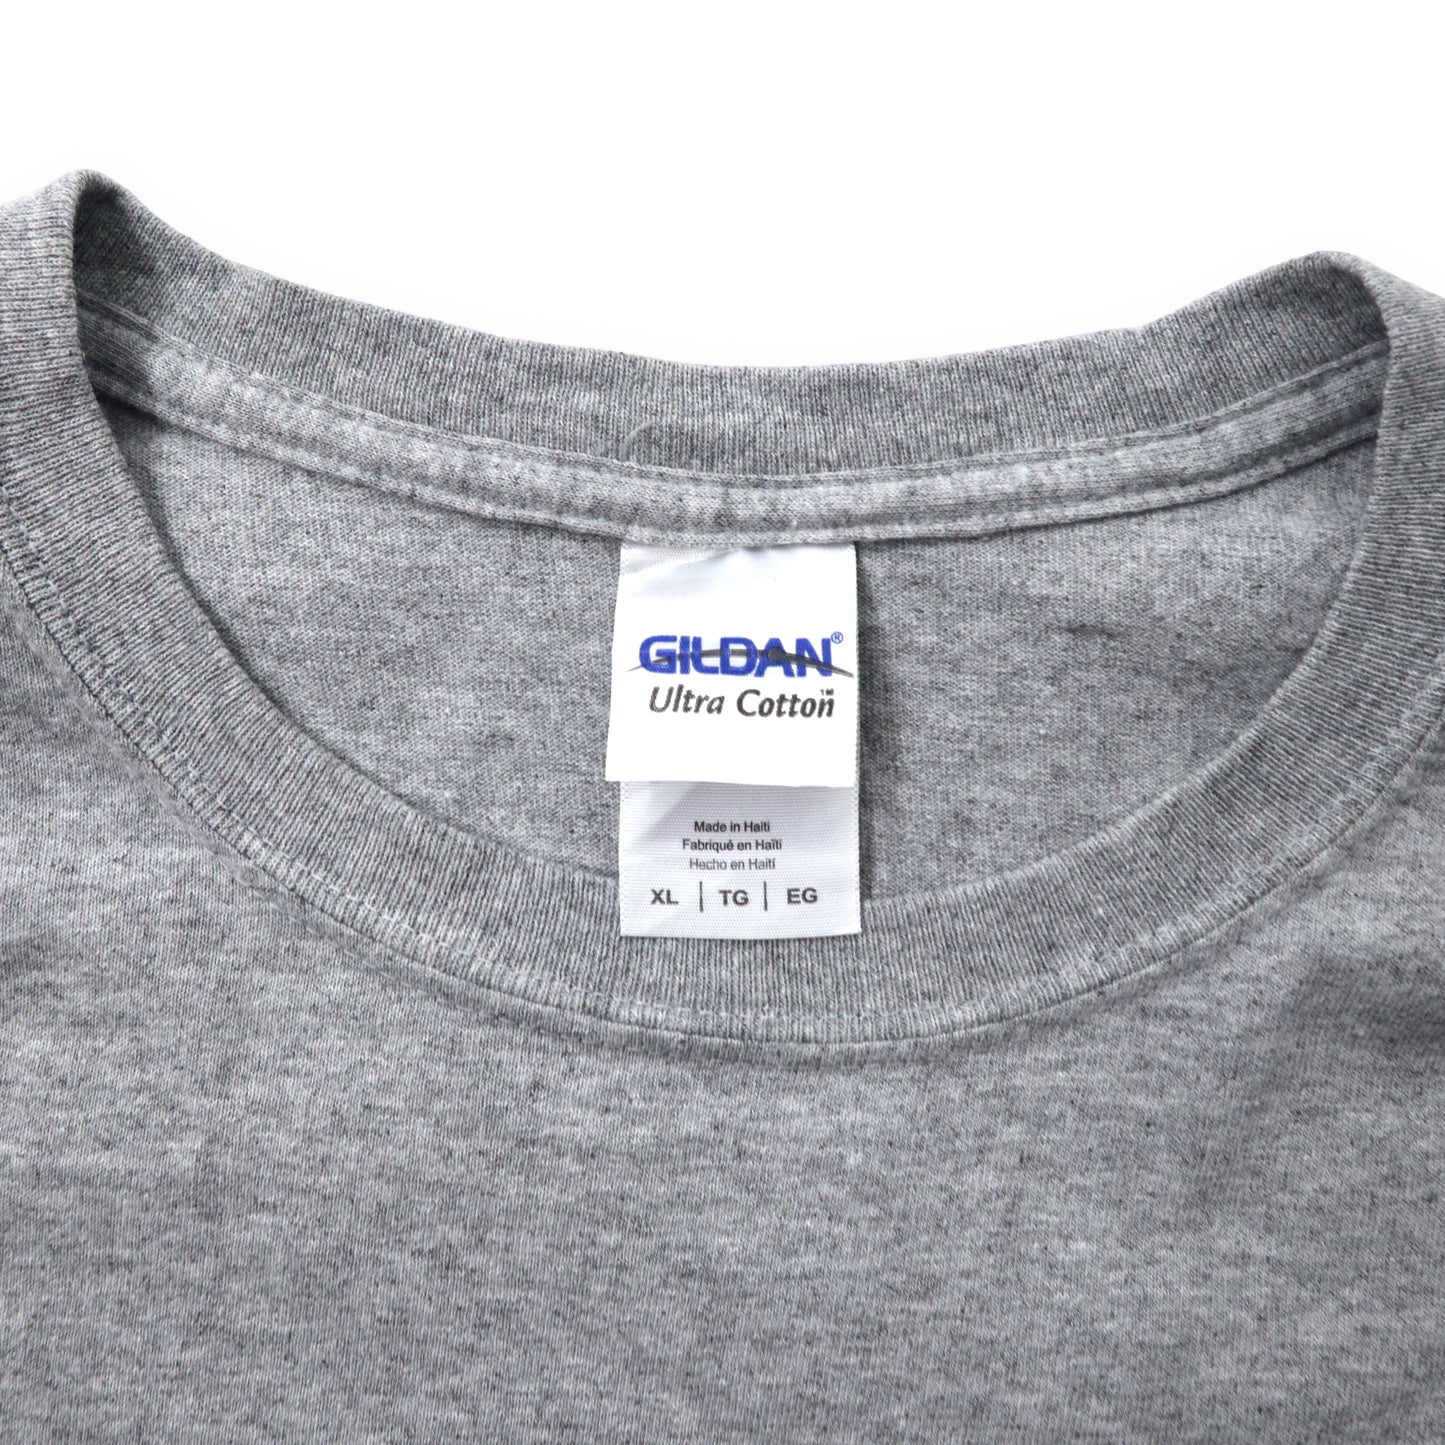 GILDAN アンカープリントTシャツ XL グレー コットン CAPTAIN AWESOME ビッグサイズ